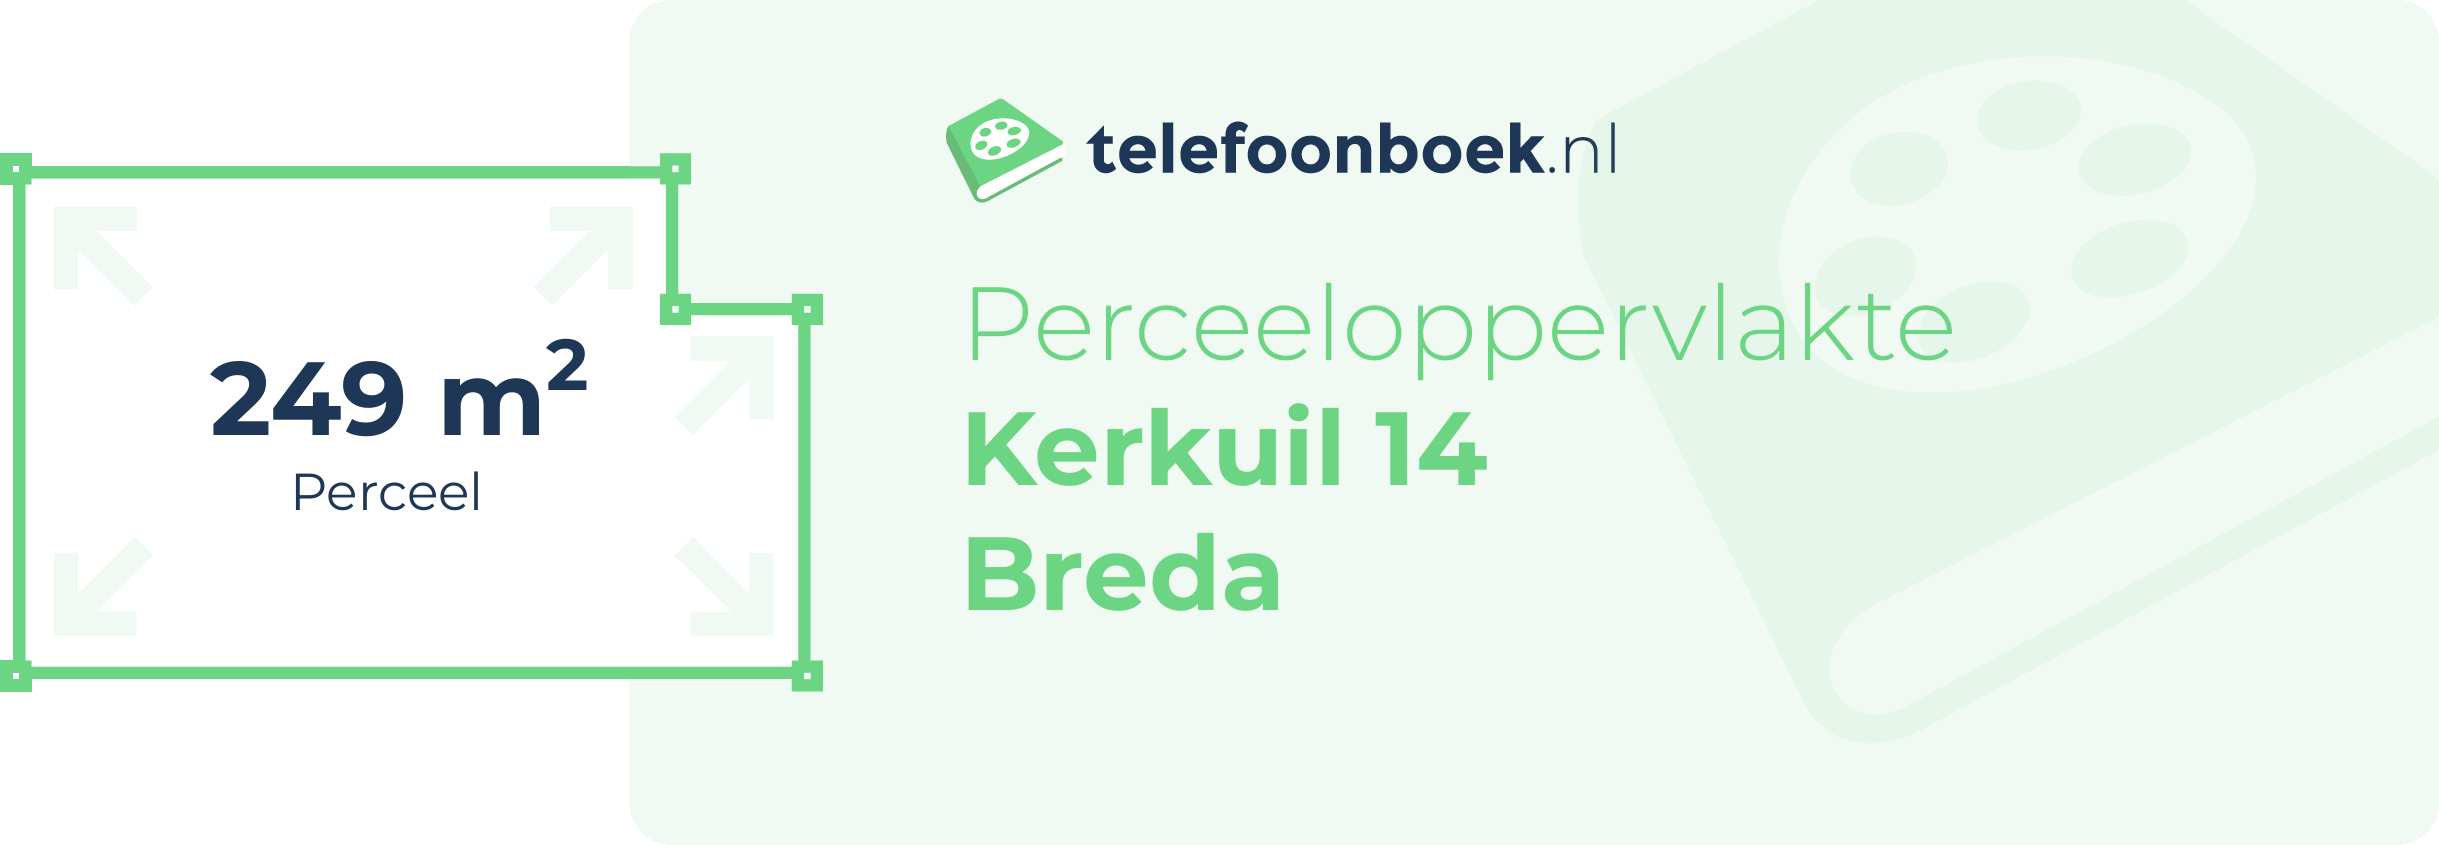 Perceeloppervlakte Kerkuil 14 Breda